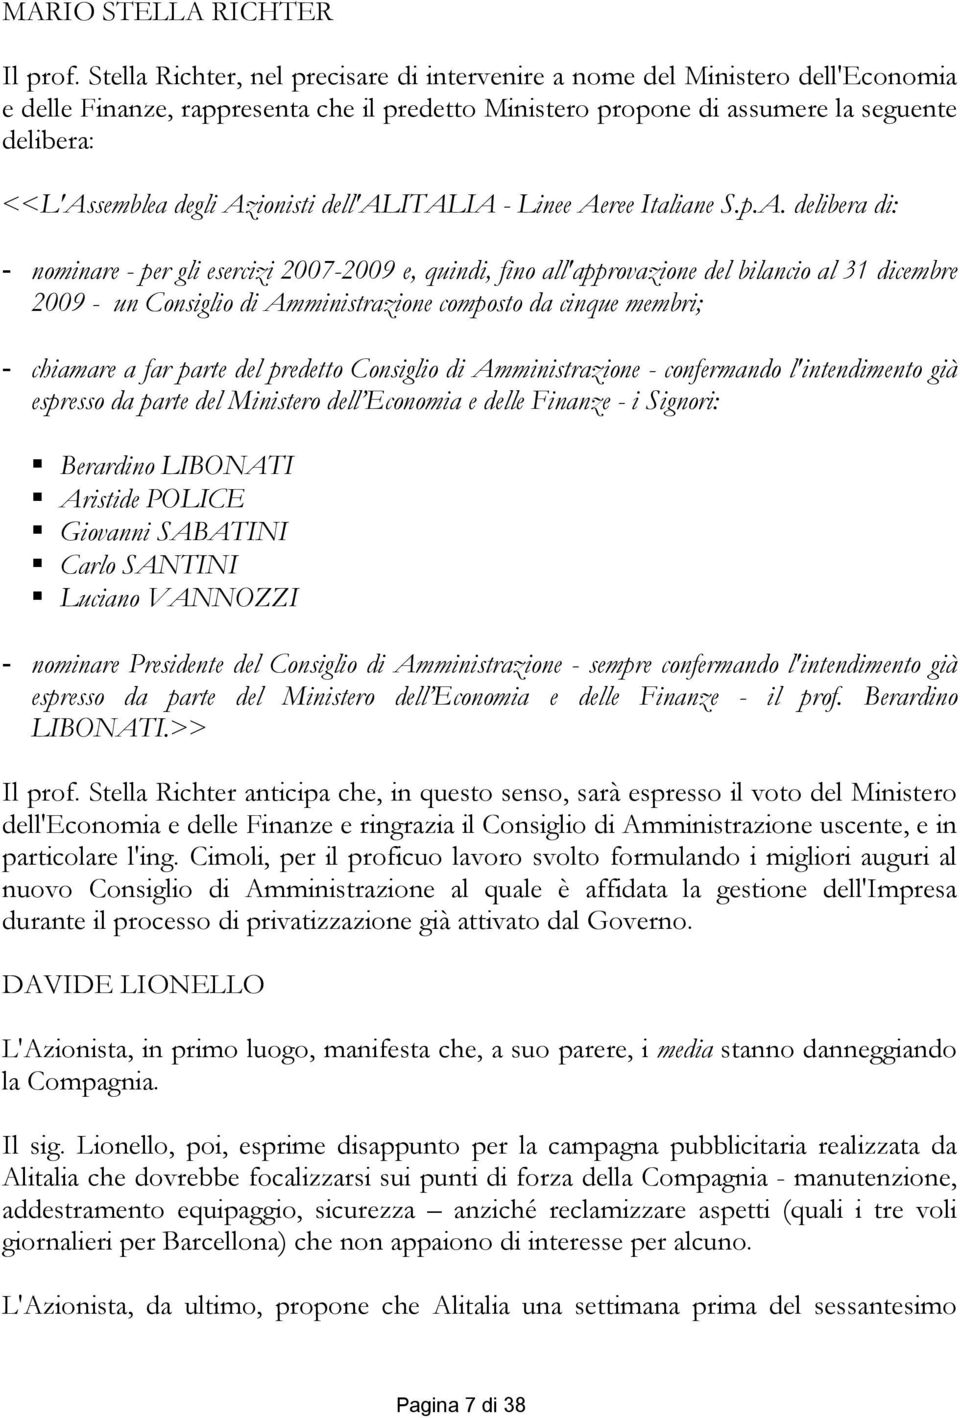 Azionisti dell'alitalia - Linee Aeree Italiane S.p.A. delibera di: - nominare - per gli esercizi 2007-2009 e, quindi, fino all'approvazione del bilancio al 31 dicembre 2009 - un Consiglio di